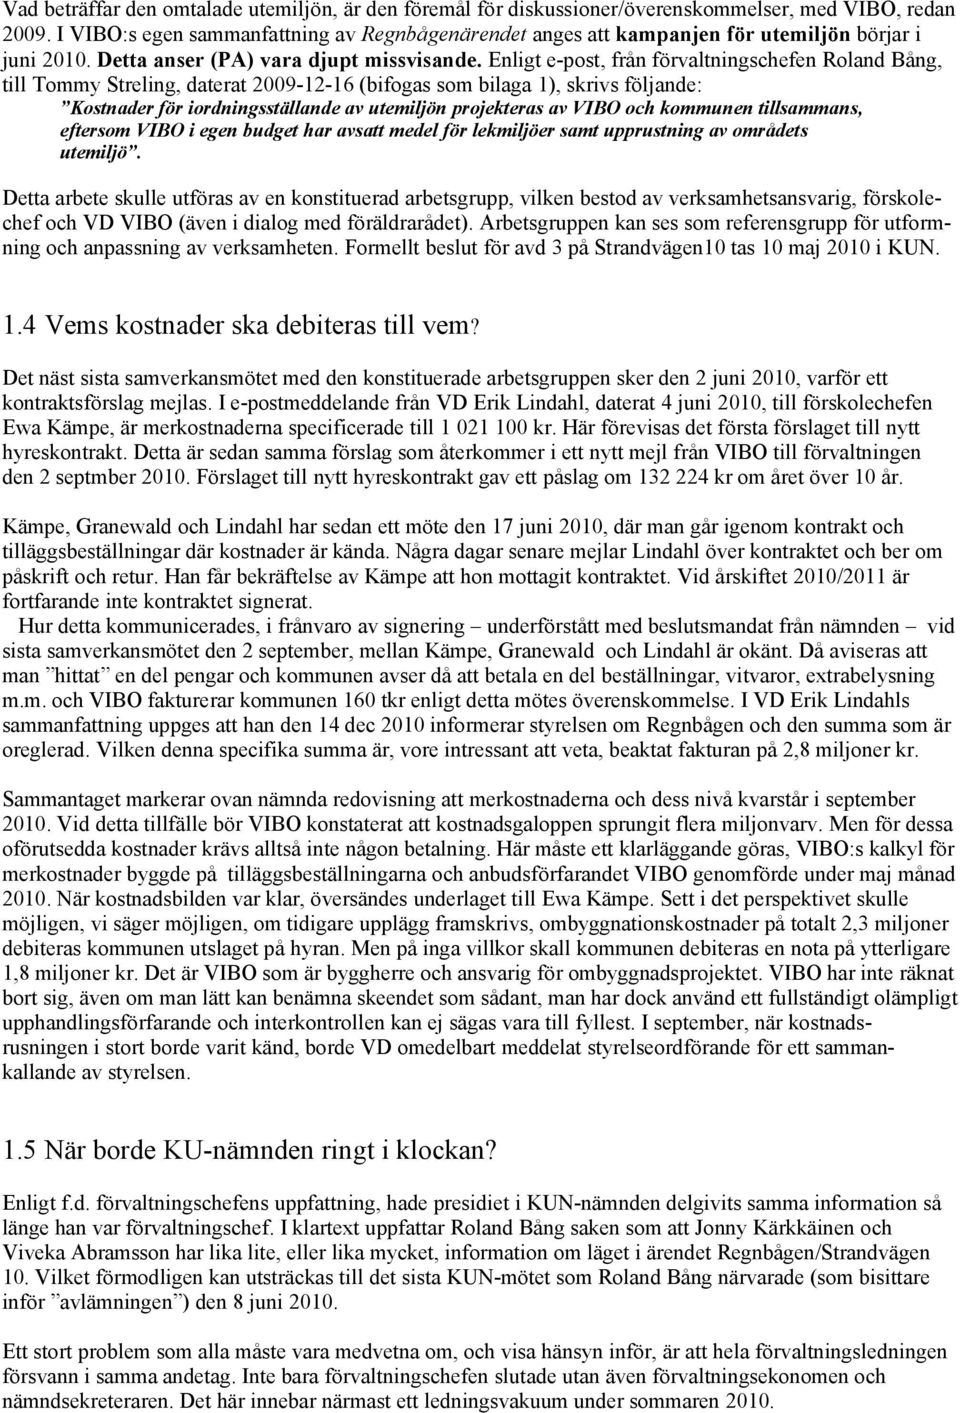 Enligt e-post, från förvaltningschefen Roland Bång, till Tommy Streling, daterat 2009-12-16 (bifogas som bilaga 1), skrivs följande: Kostnader för iordningsställande av utemiljön projekteras av VIBO